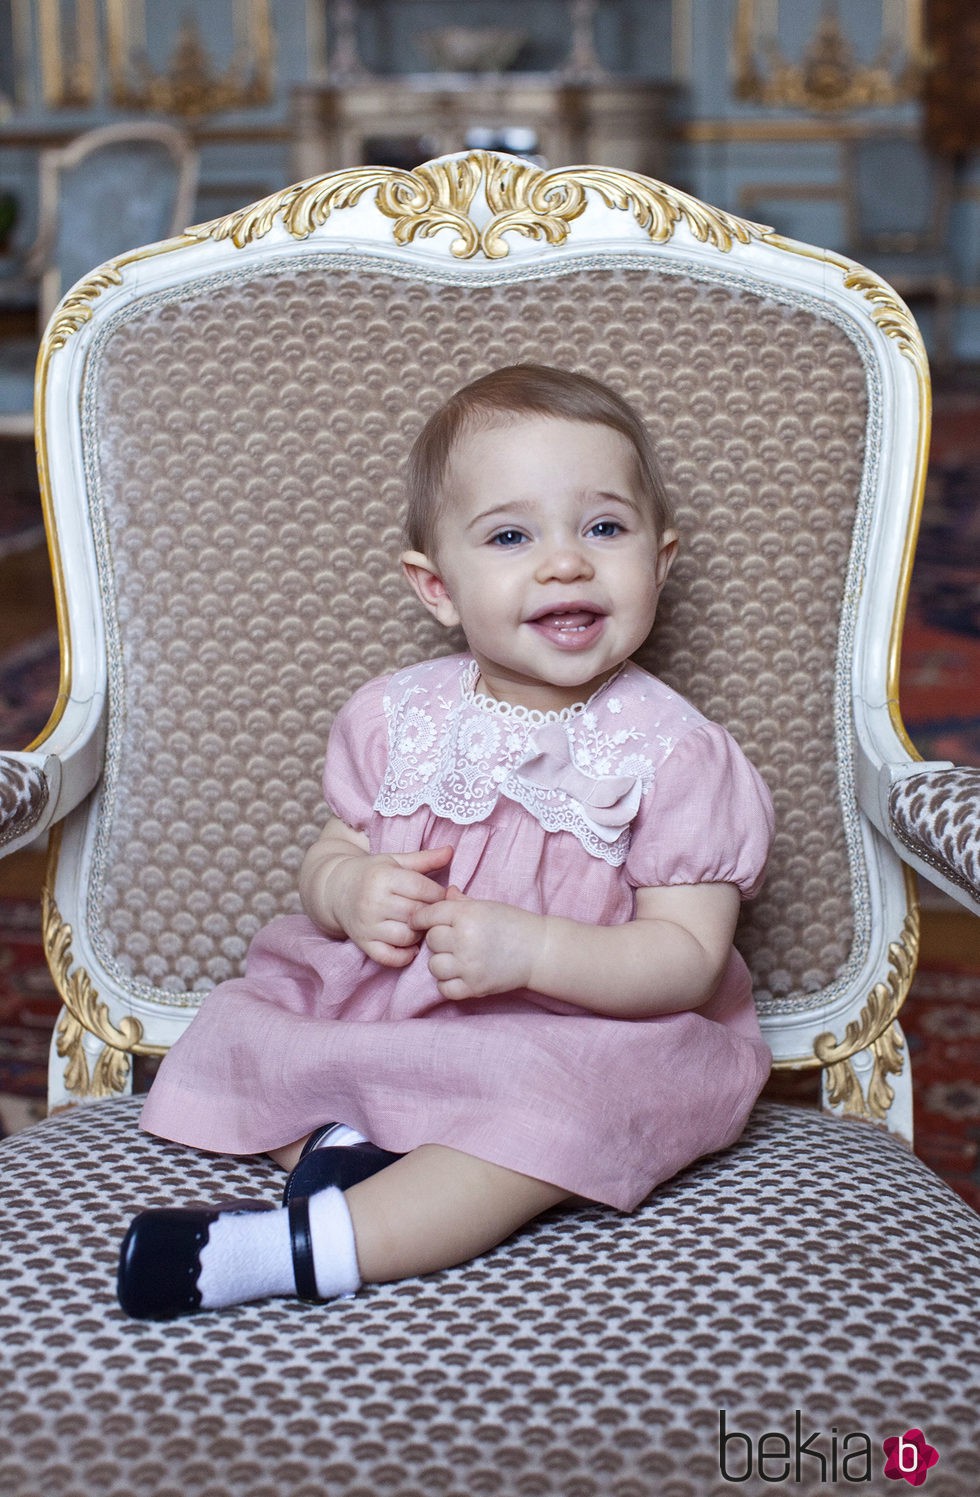 La Princesa Leonor de Suecia cumple 1 año